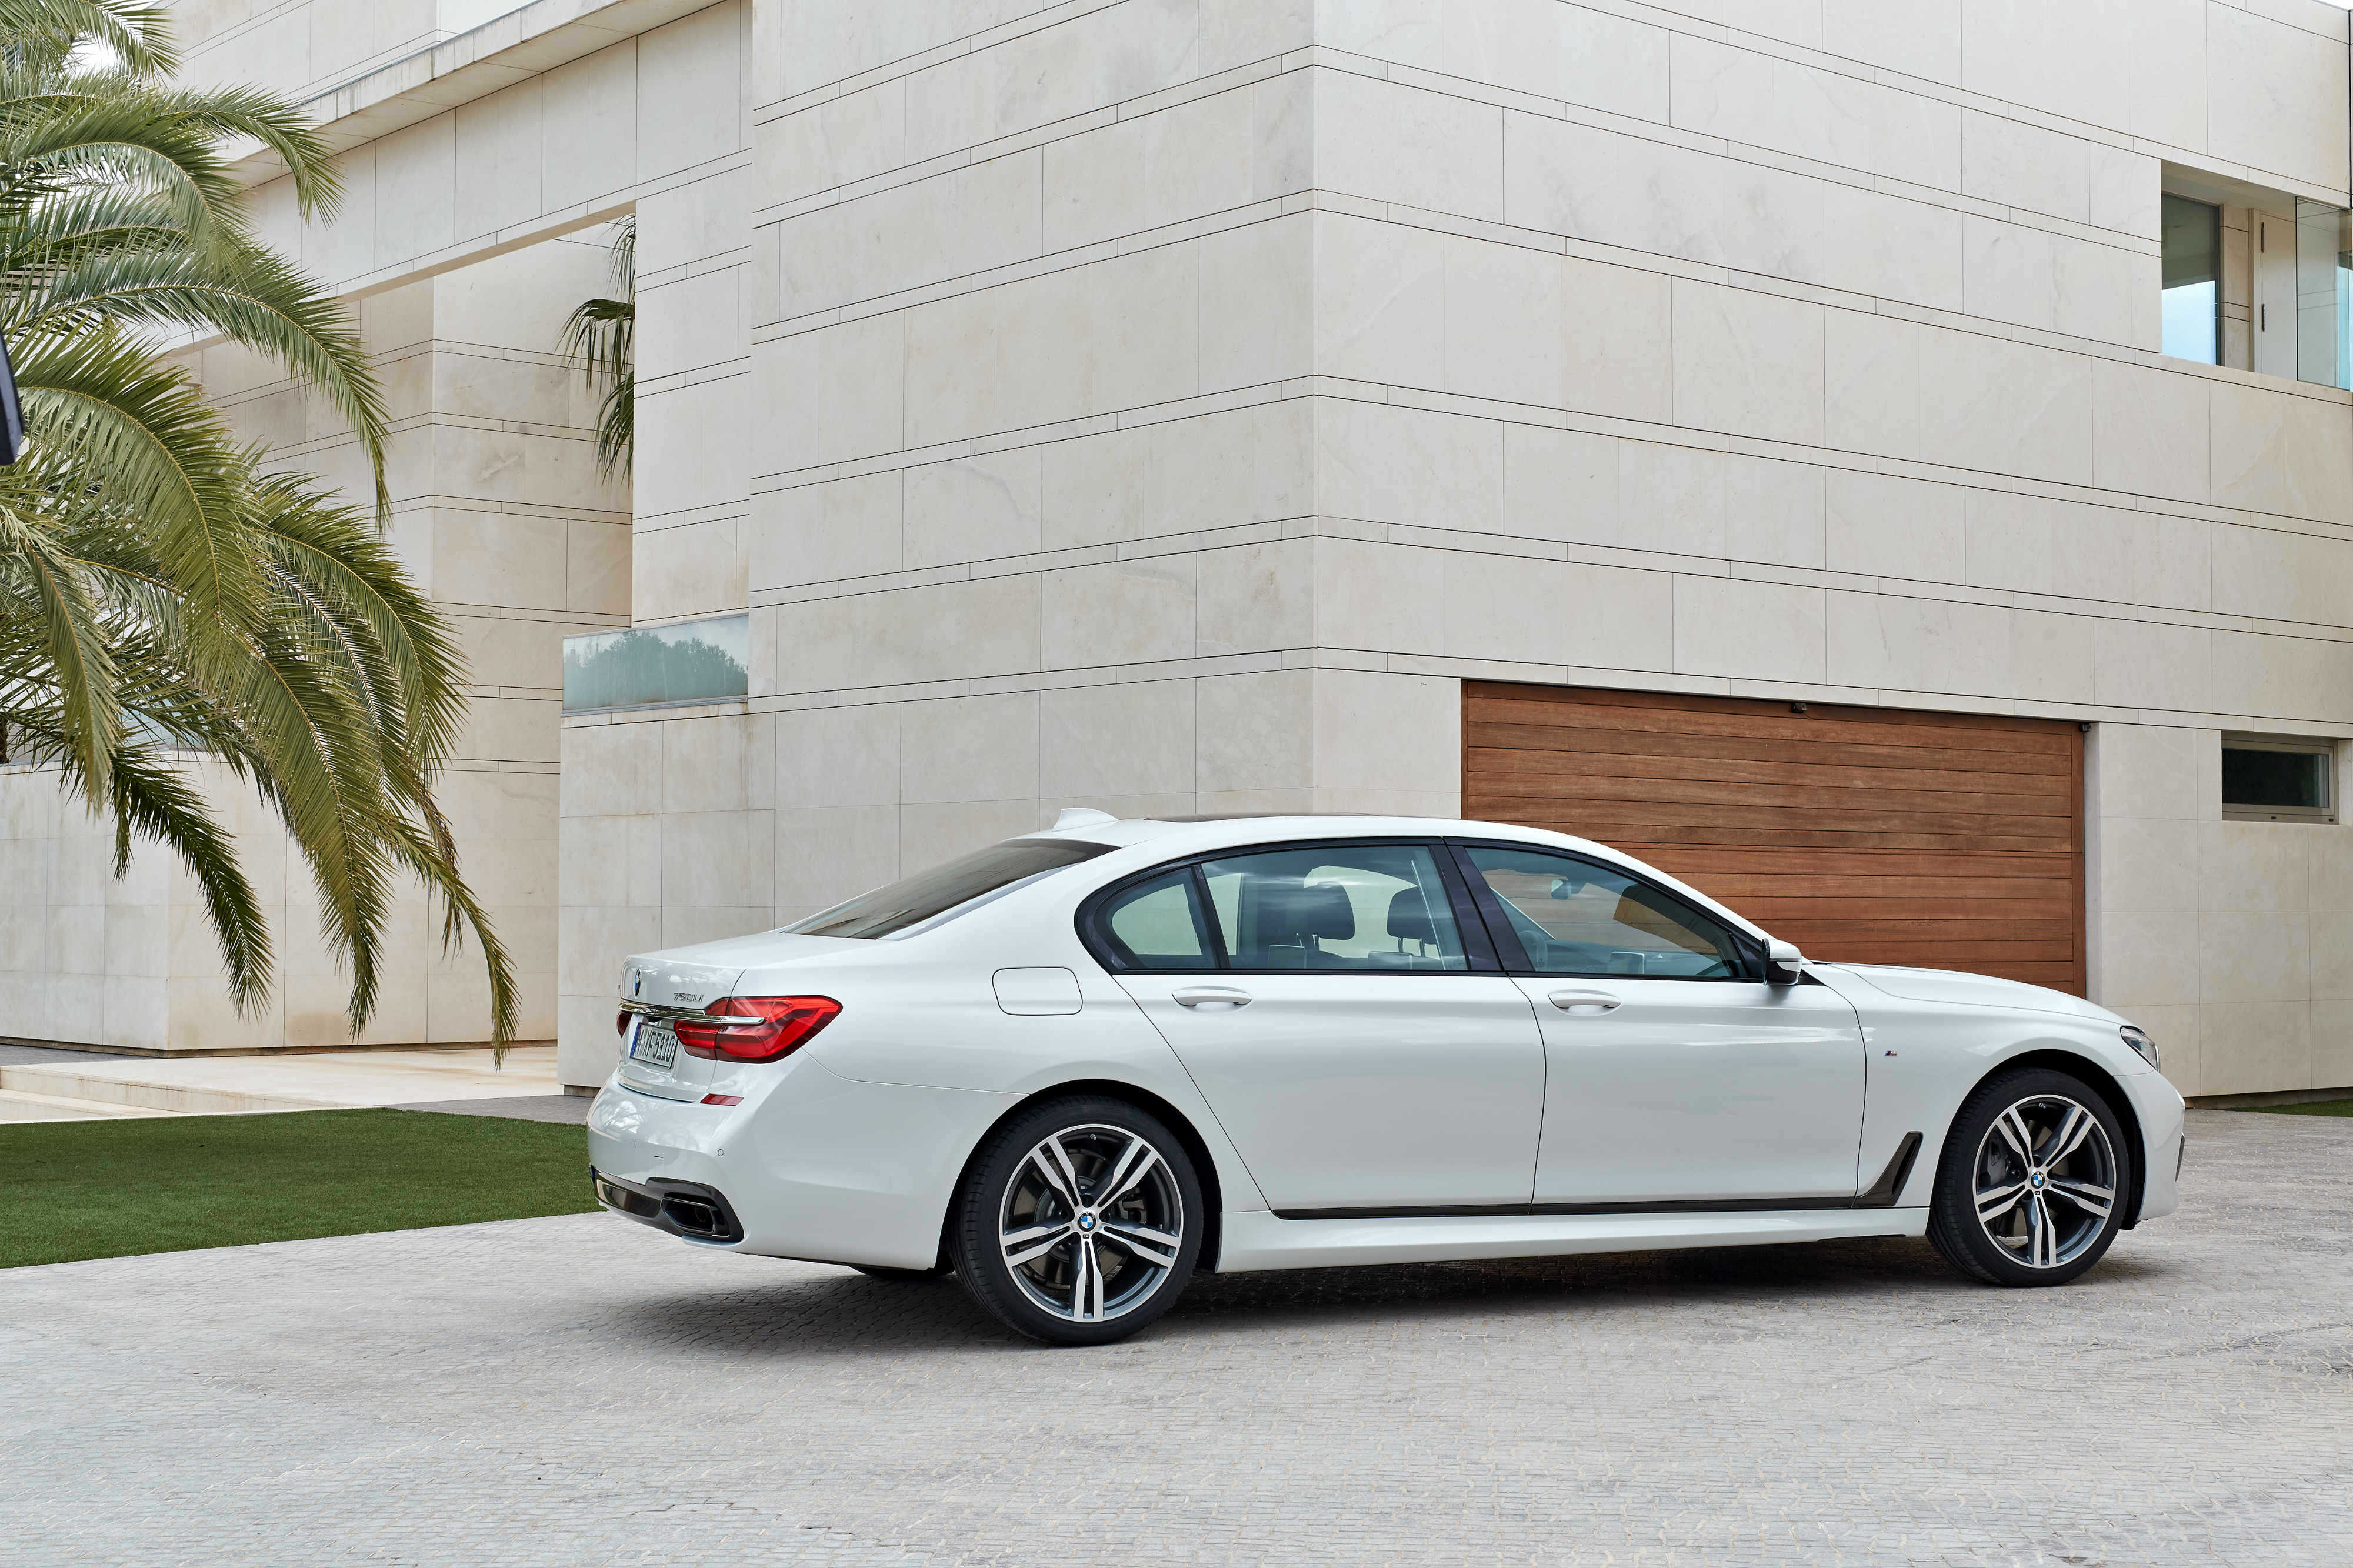 BMW 7-series 2015 rear view